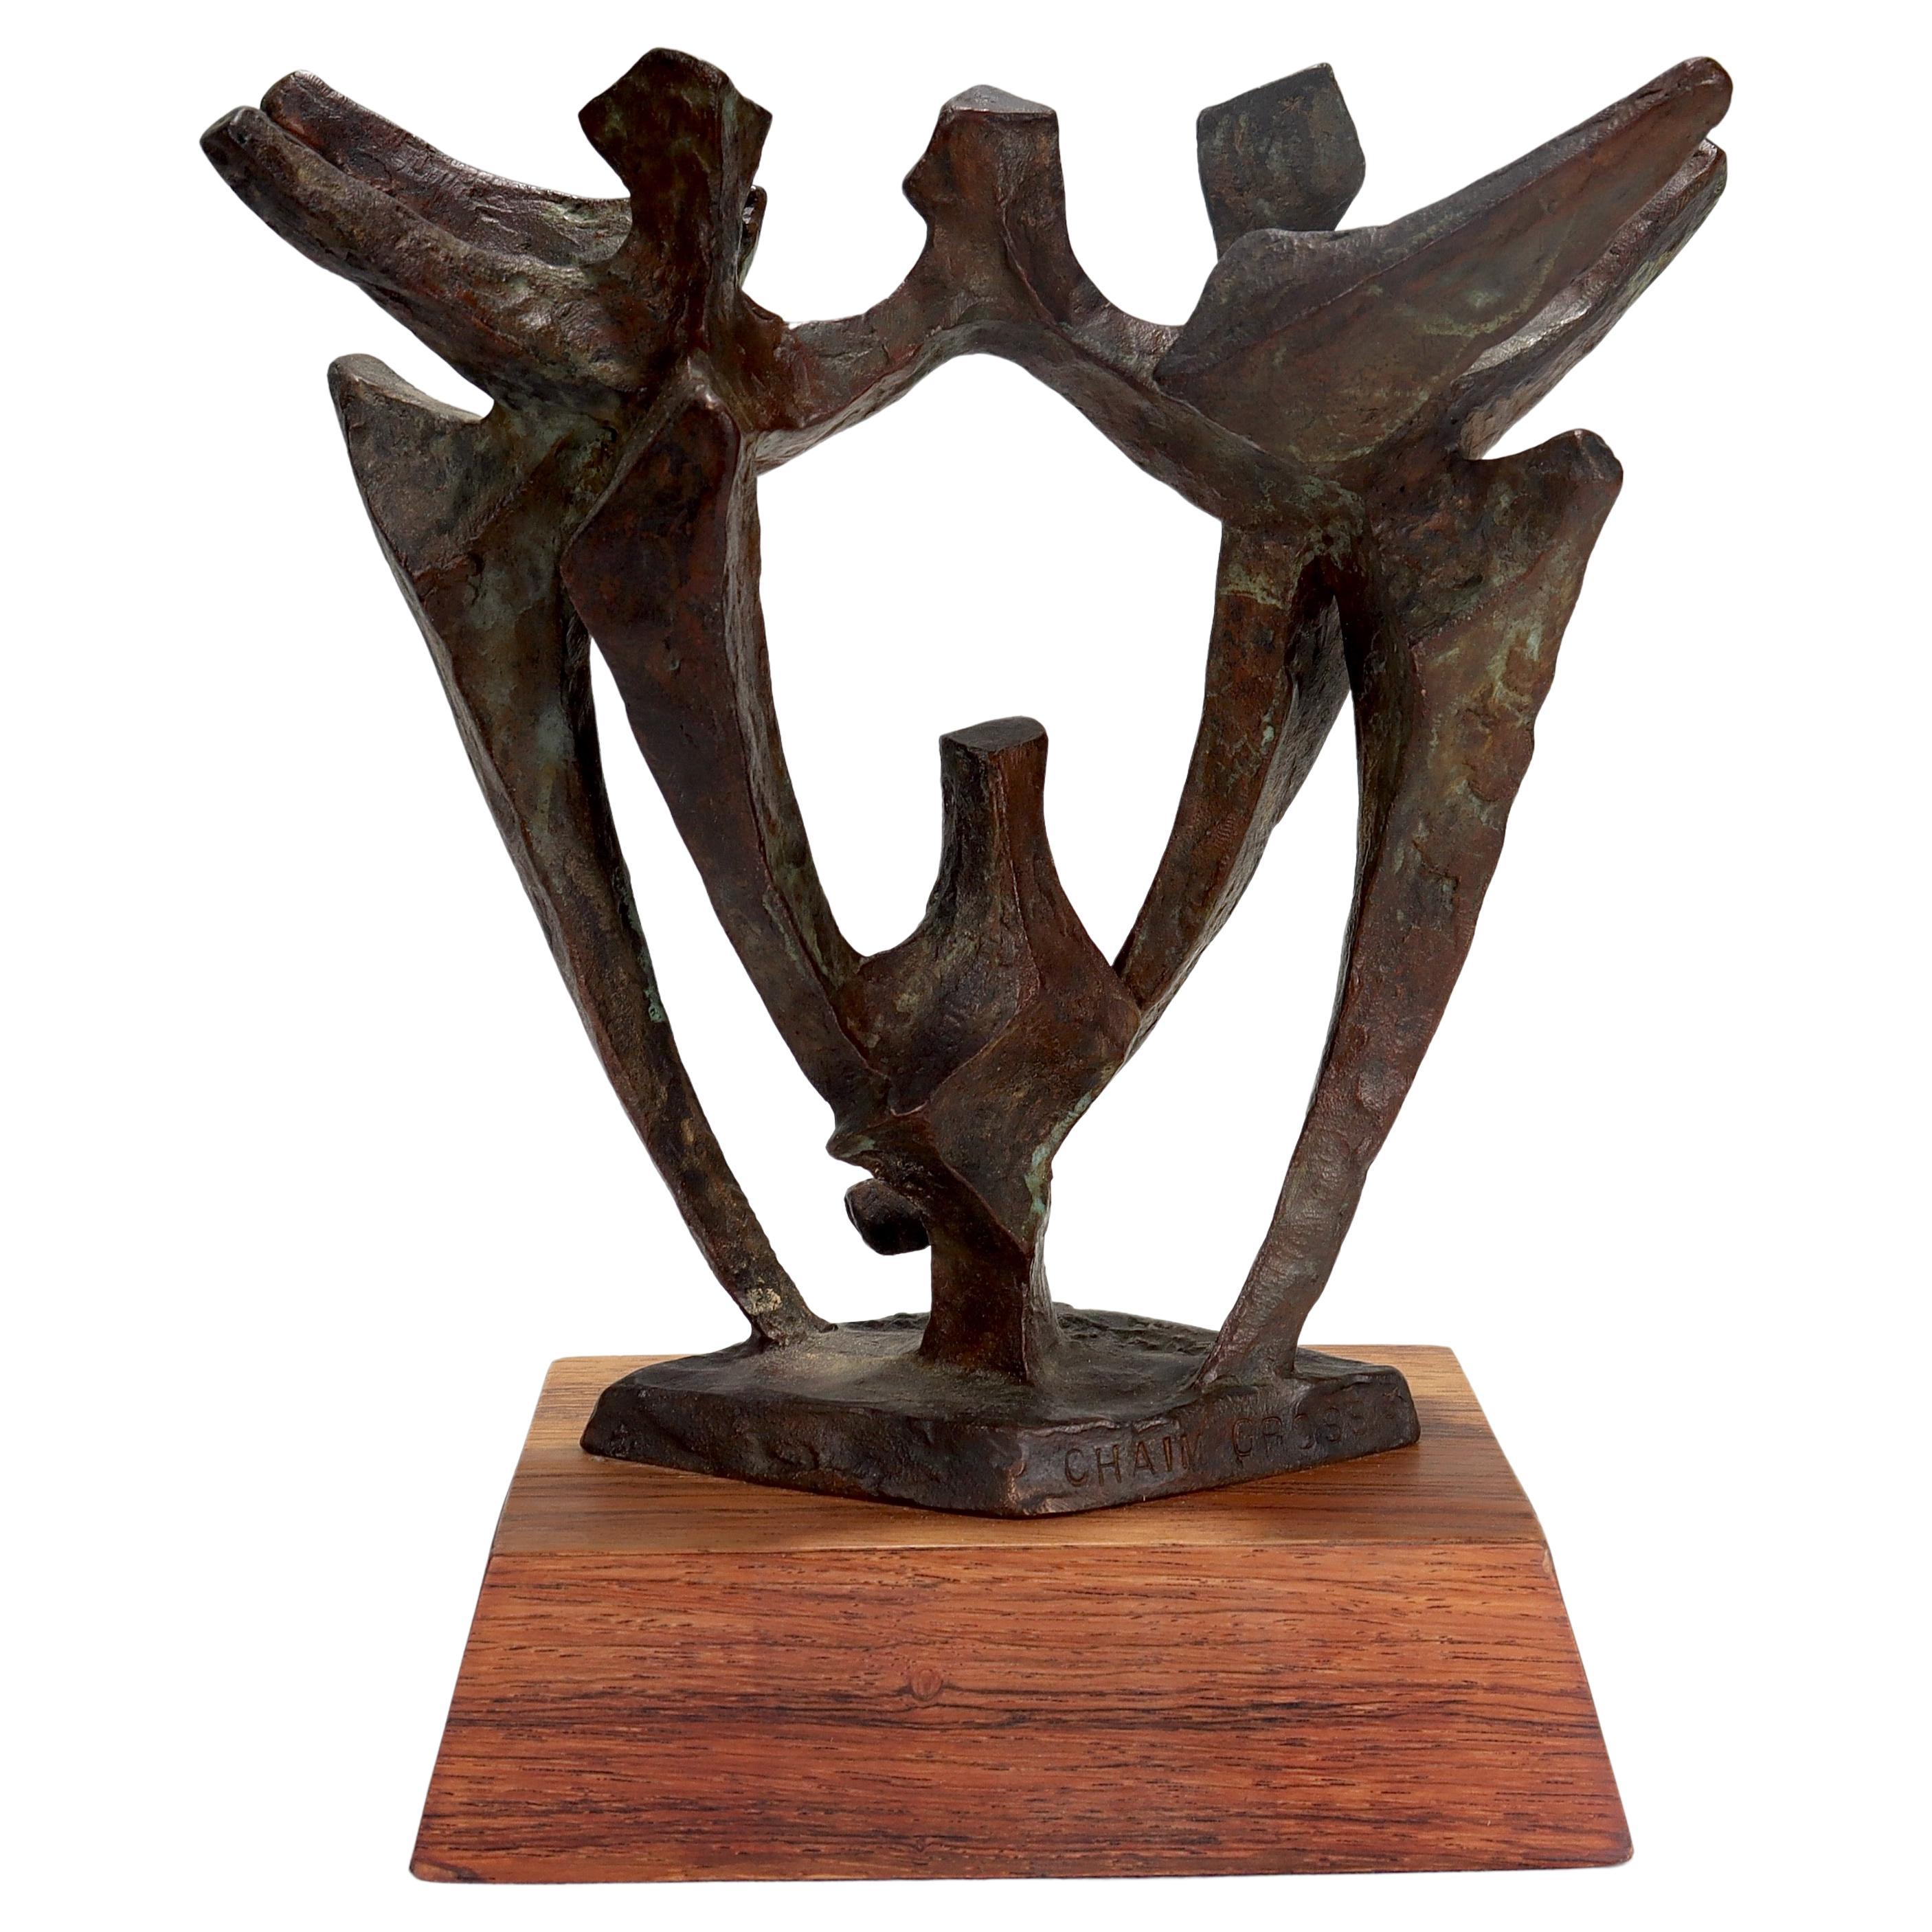 Chaim Gross Modernist Abstract Bronze Sculpture of Dancers